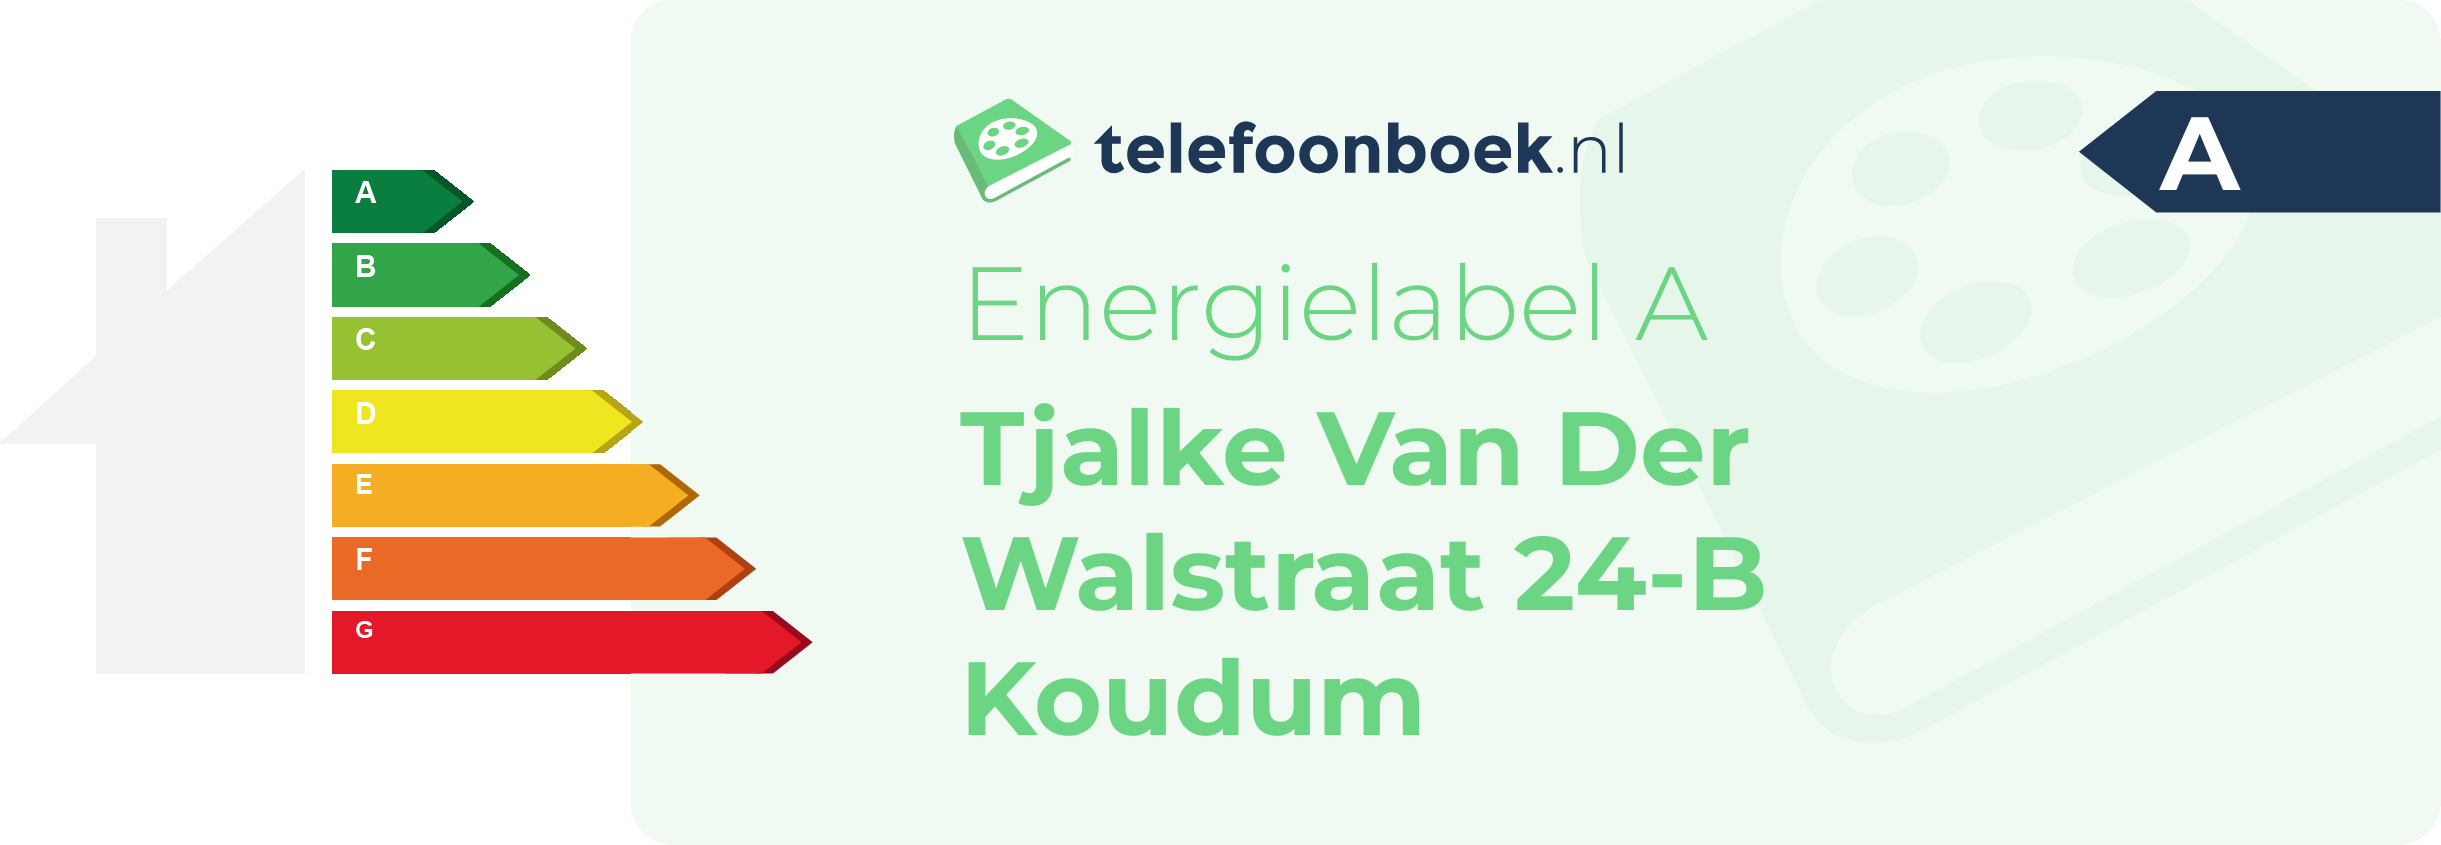 Energielabel Tjalke Van Der Walstraat 24-B Koudum